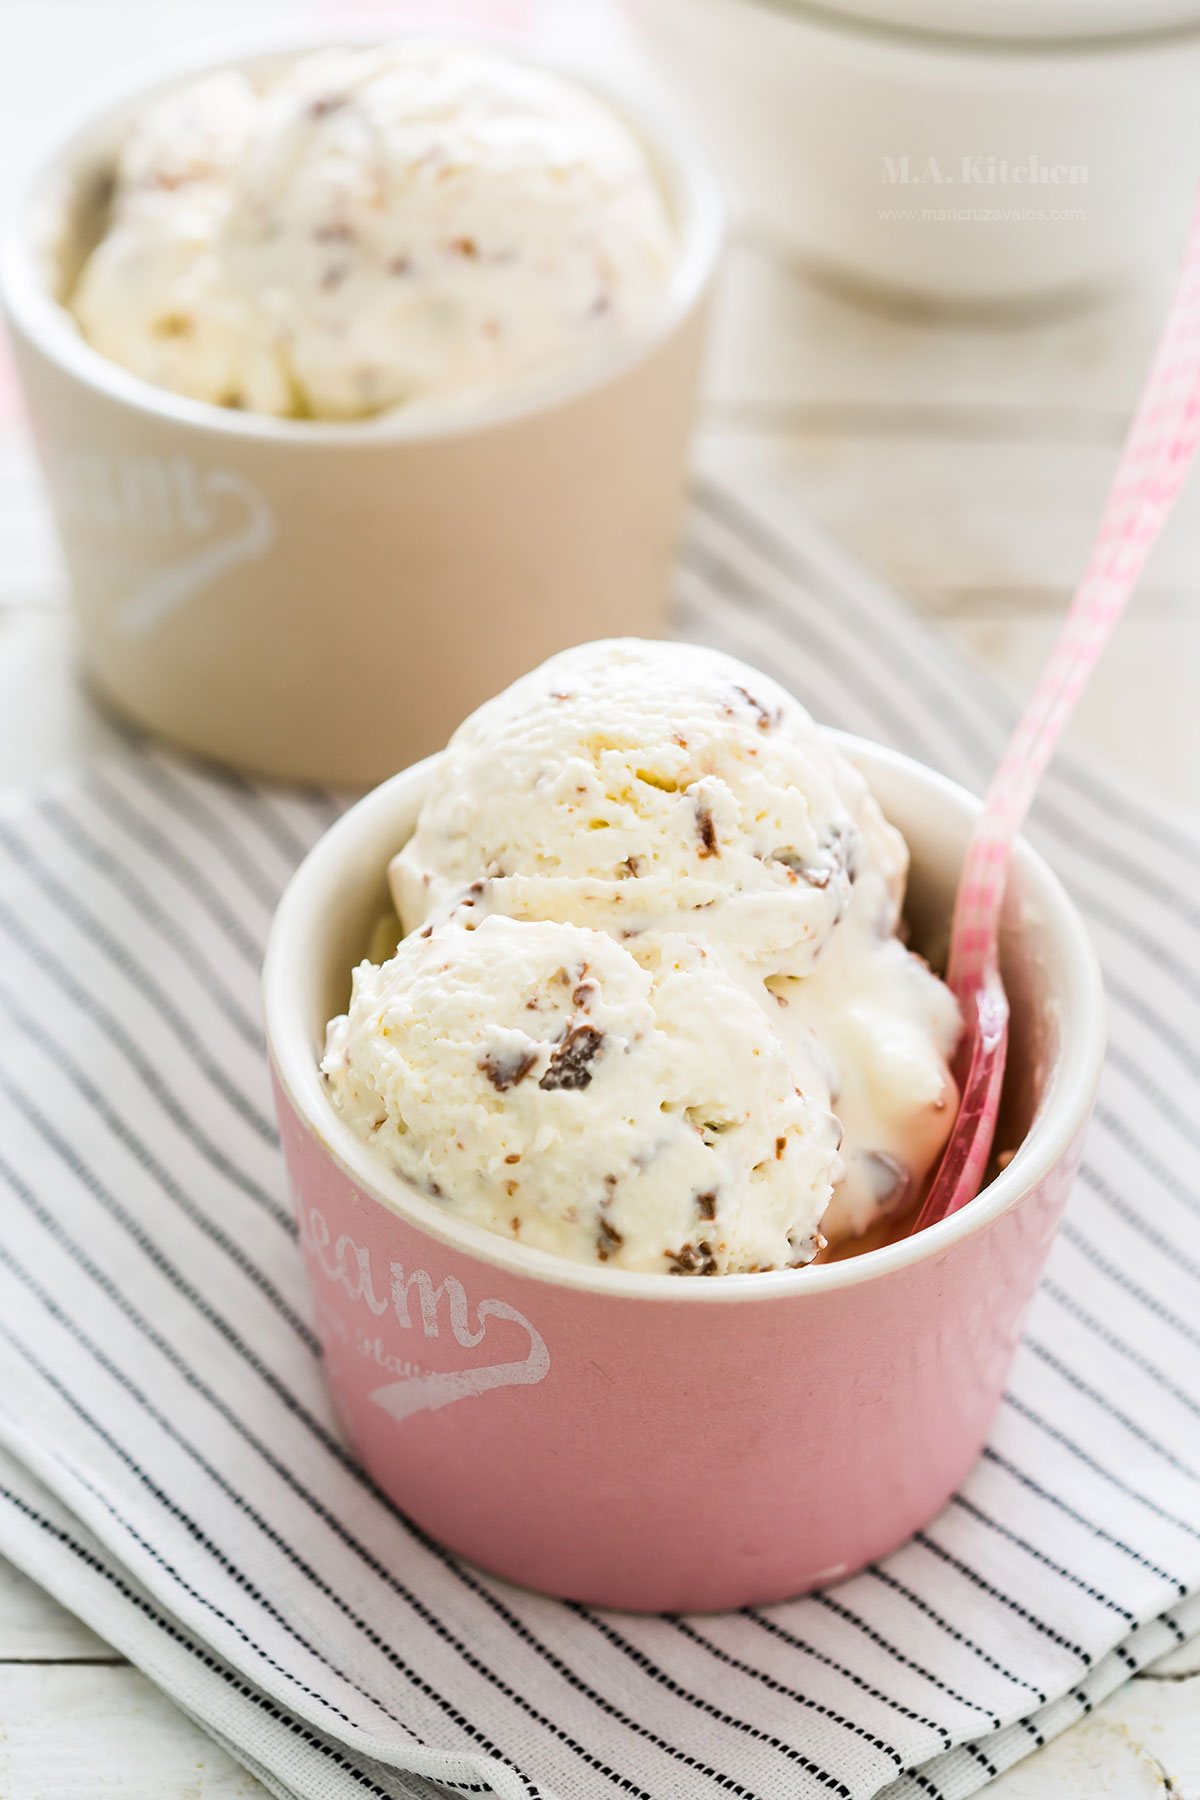 Stracciatella gelato ice cream served in two cups.